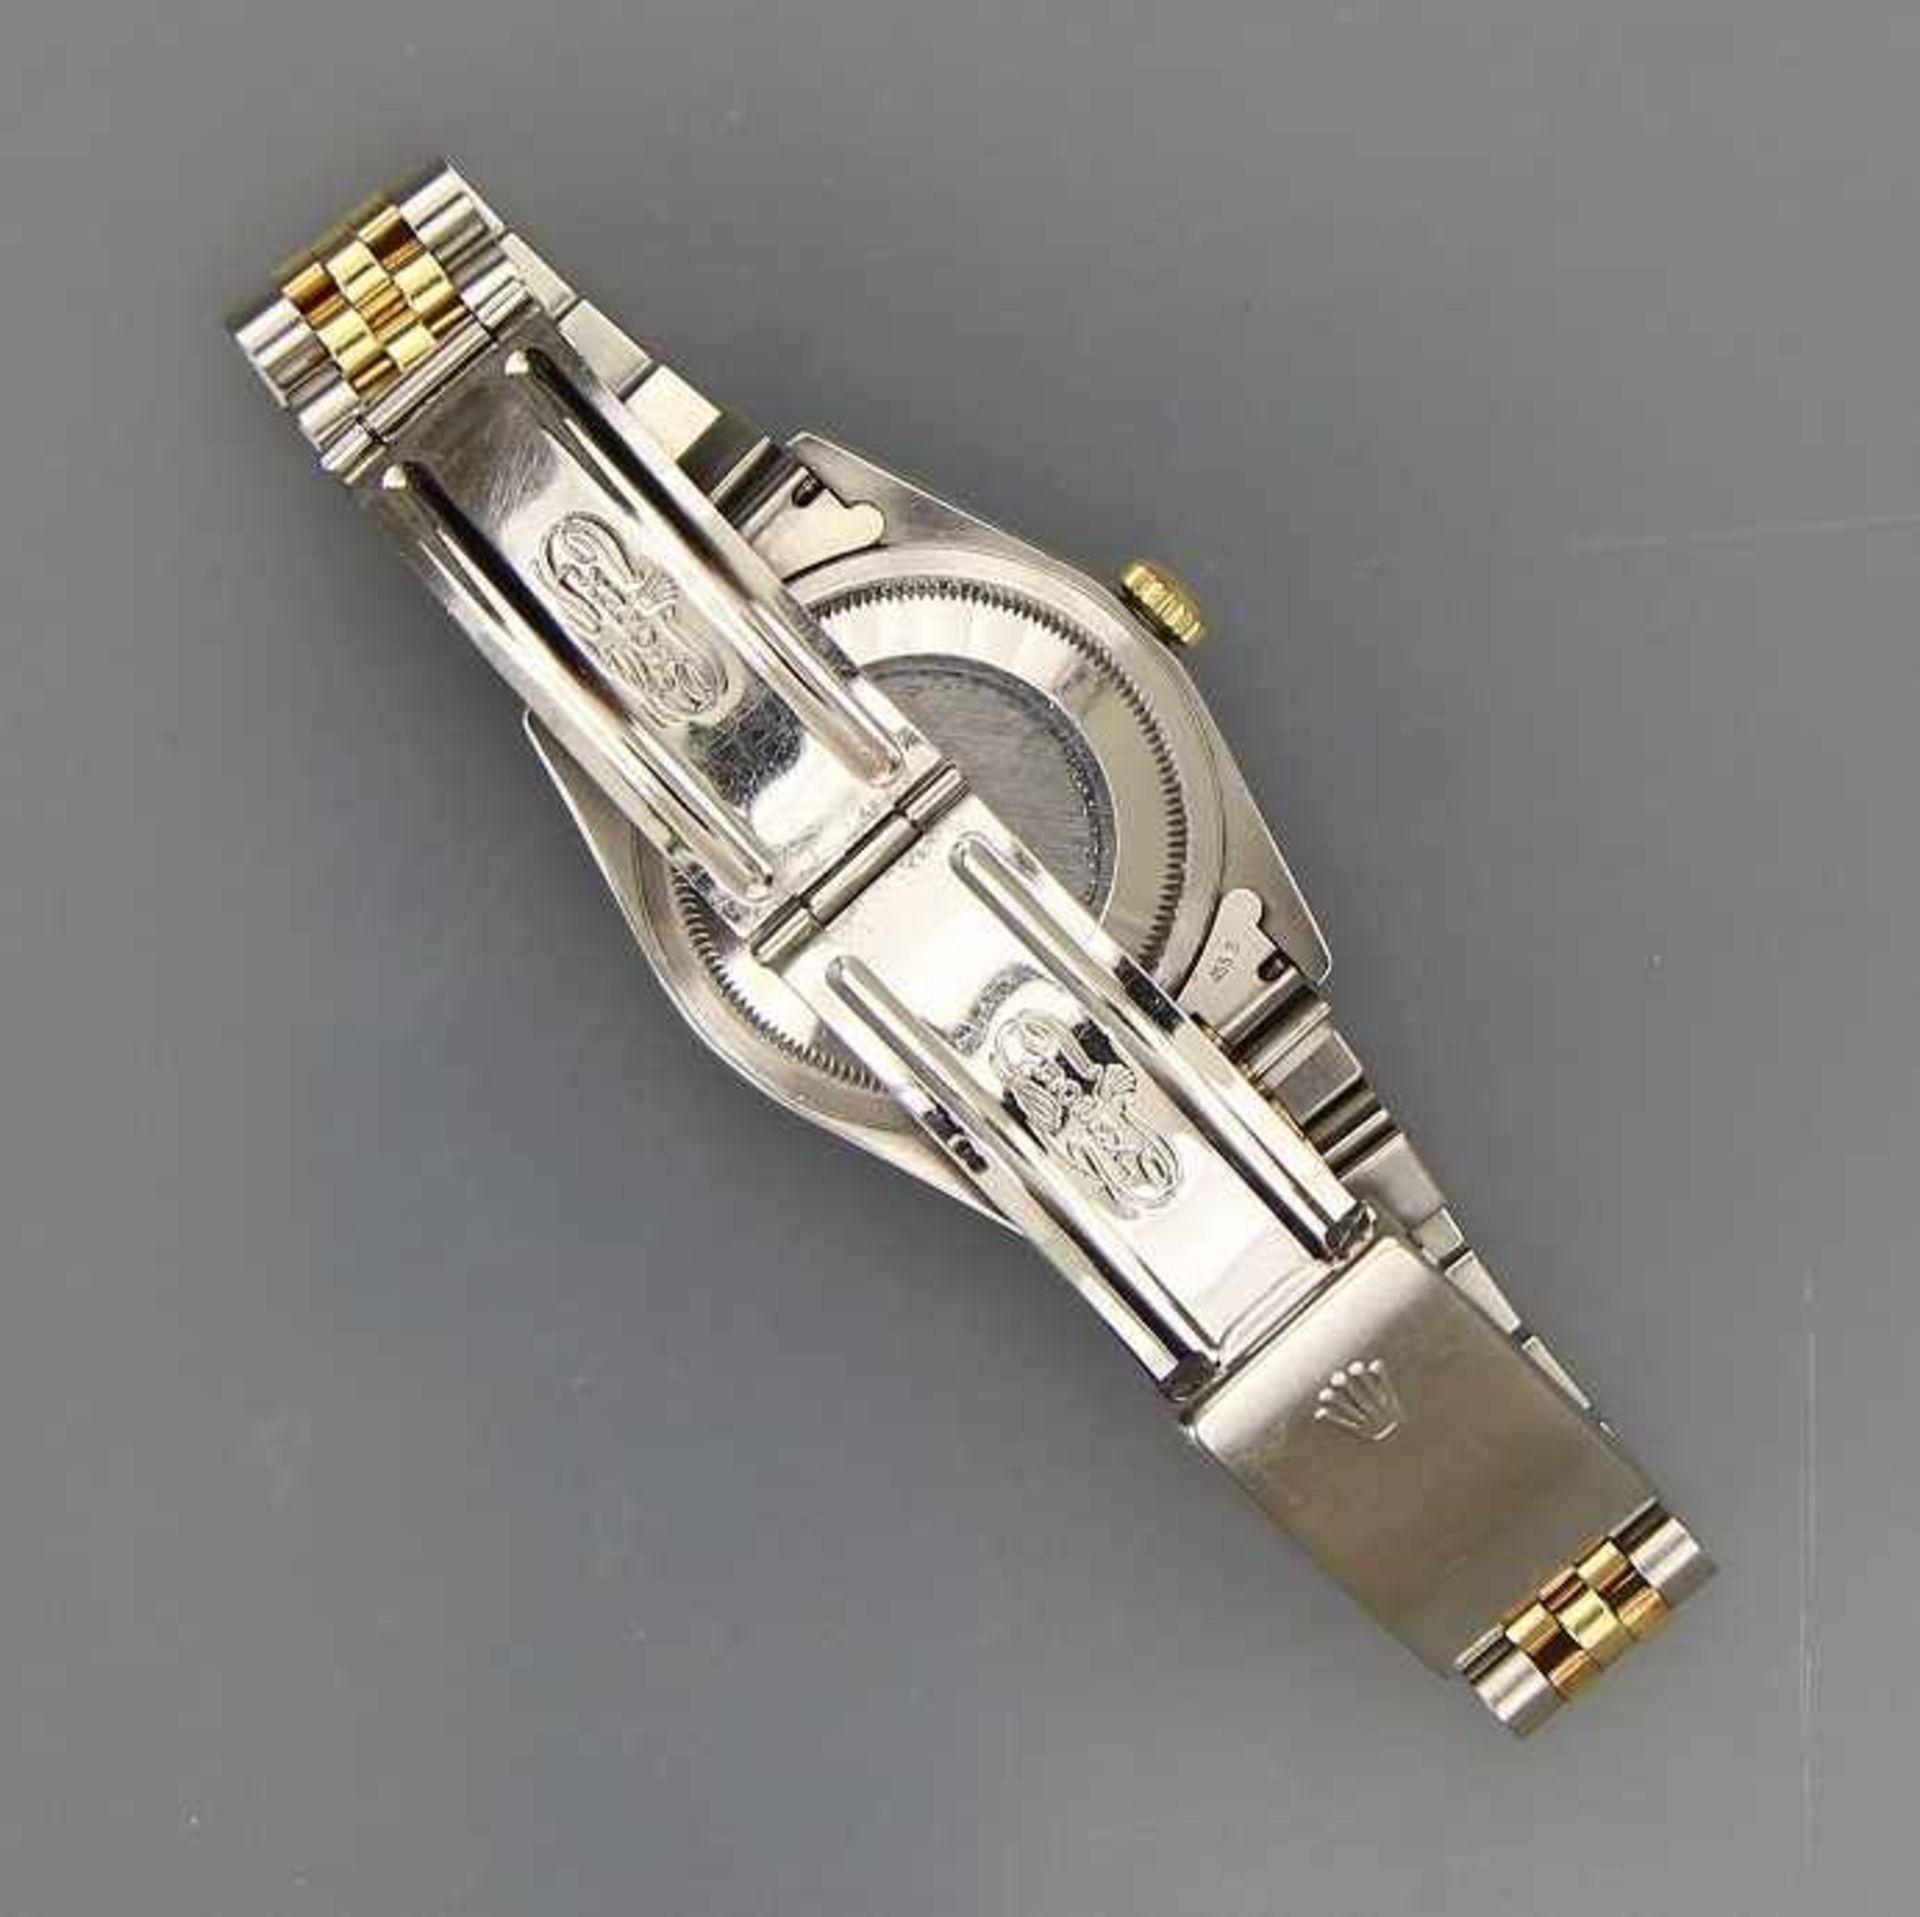 HAU "Rolex Oyster Perpetual Datejust Superlative Chronometer" Gehäuse und Band Stahl und Gelbgold - Image 3 of 3